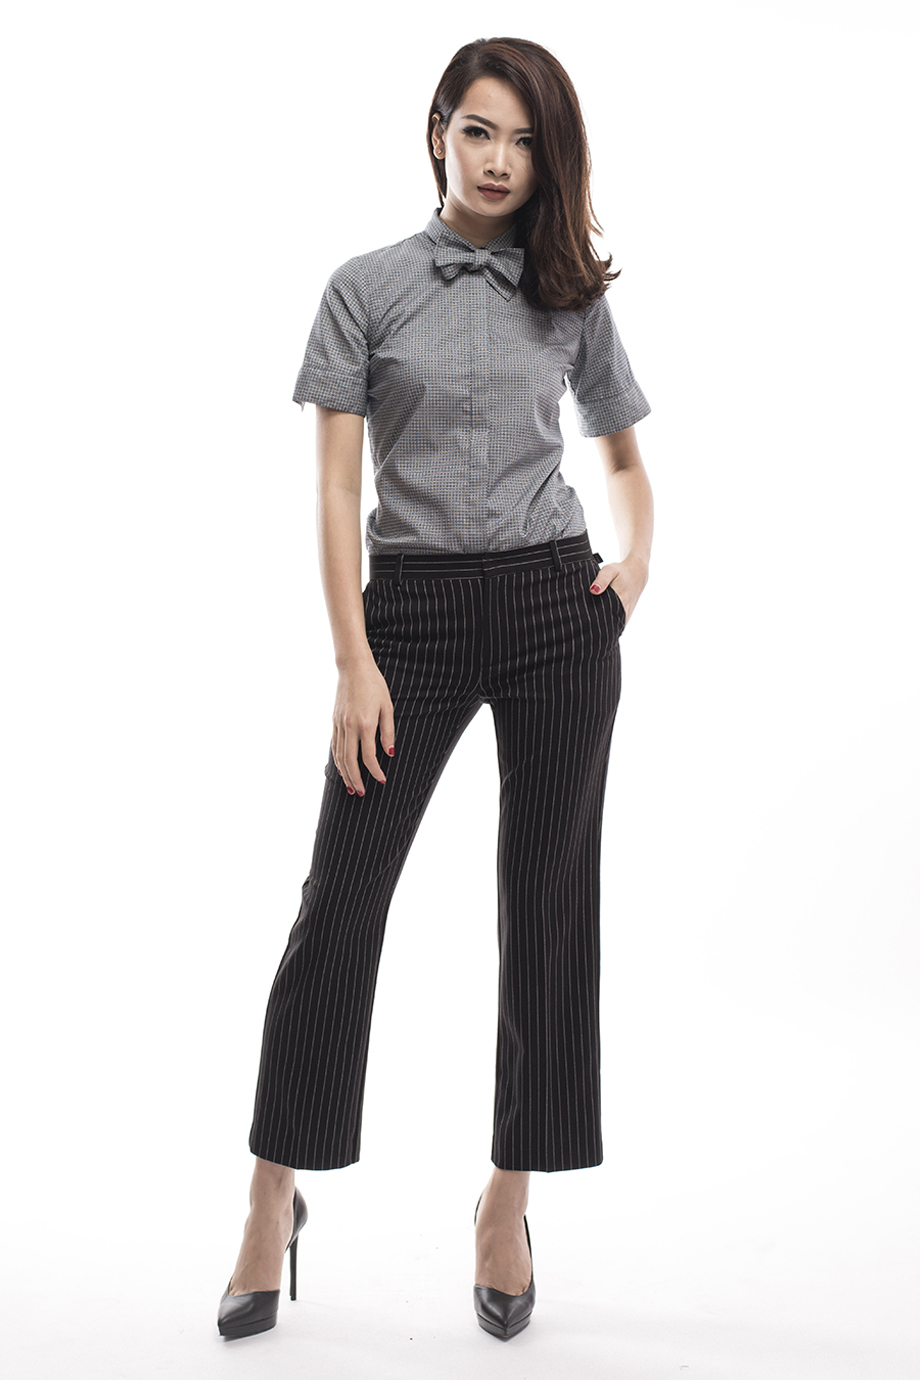 Madison Bow Tie Shirt/ Short/ Grey Daisy